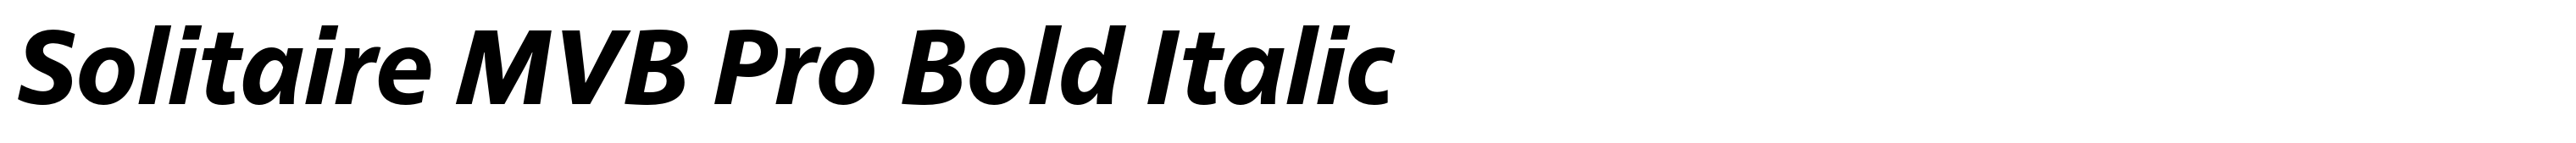 Solitaire MVB Pro Bold Italic